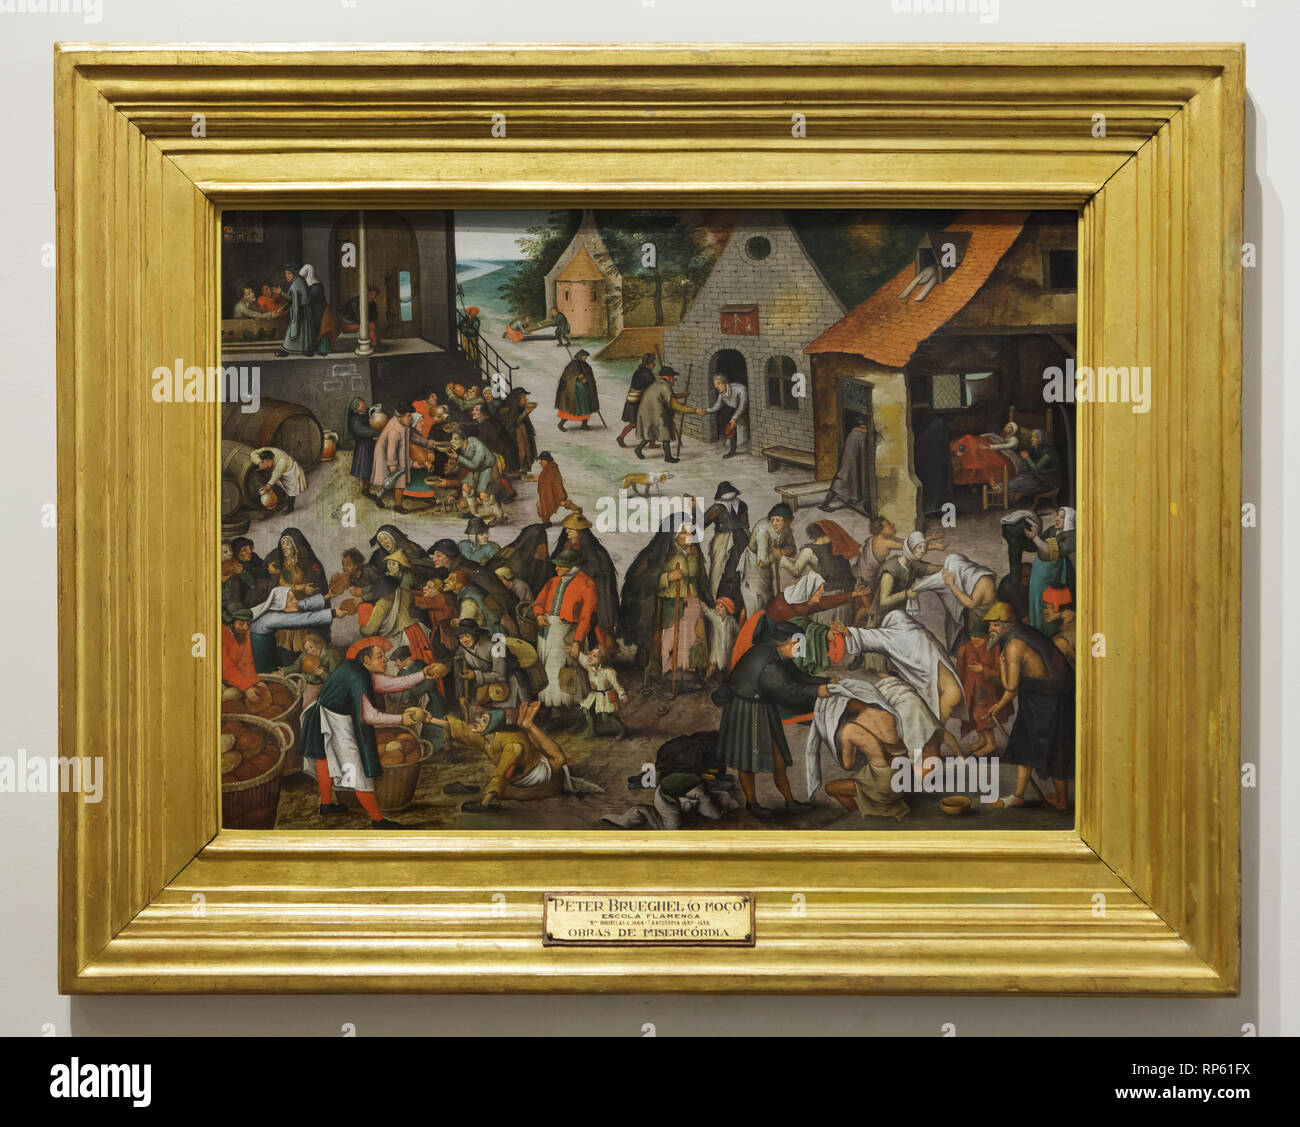 Pittura 'Sanche atti di misericordia' olandese da pittore rinascimentale Pieter Bruegel il giovane (1600-1605) in mostra al Museo Nazionale di Arte Antica (Museu Nacional de Arte Antiga) a Lisbona, Portogallo. Foto Stock